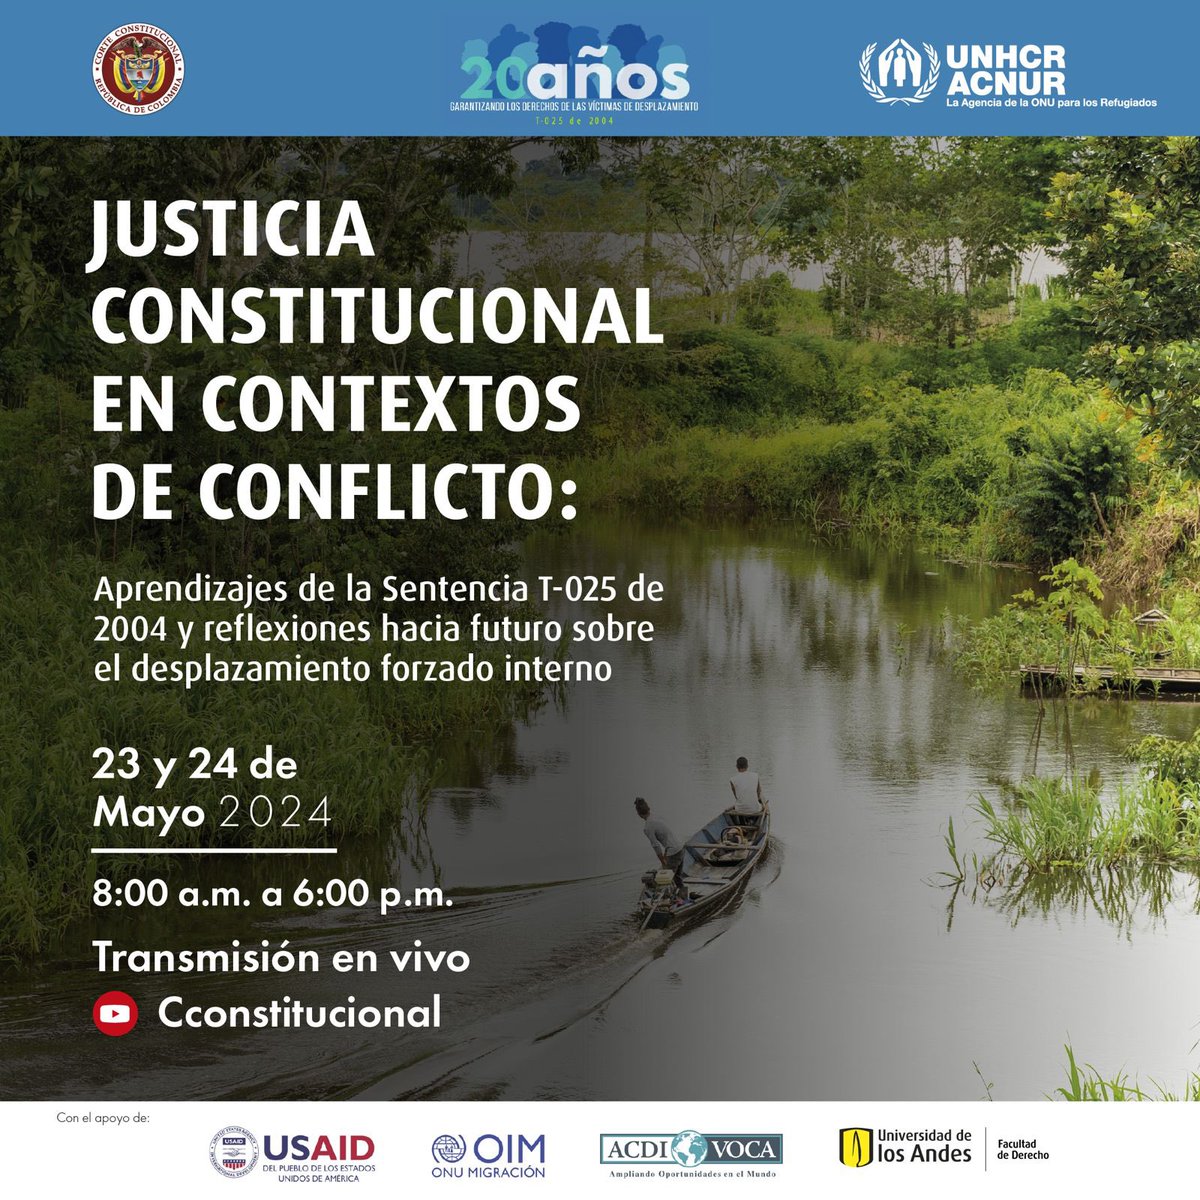 Con la conferencia “Justicia Constitucional en Contextos de Conflicto: aprendizajes de la Sentencia T-025 de 2004 y reflexiones hacia futuro sobre el desplazamiento forzado interno”, la Corte y Acnur Colombia rememoran los 20 años desde que fue proferida la Sentencia.